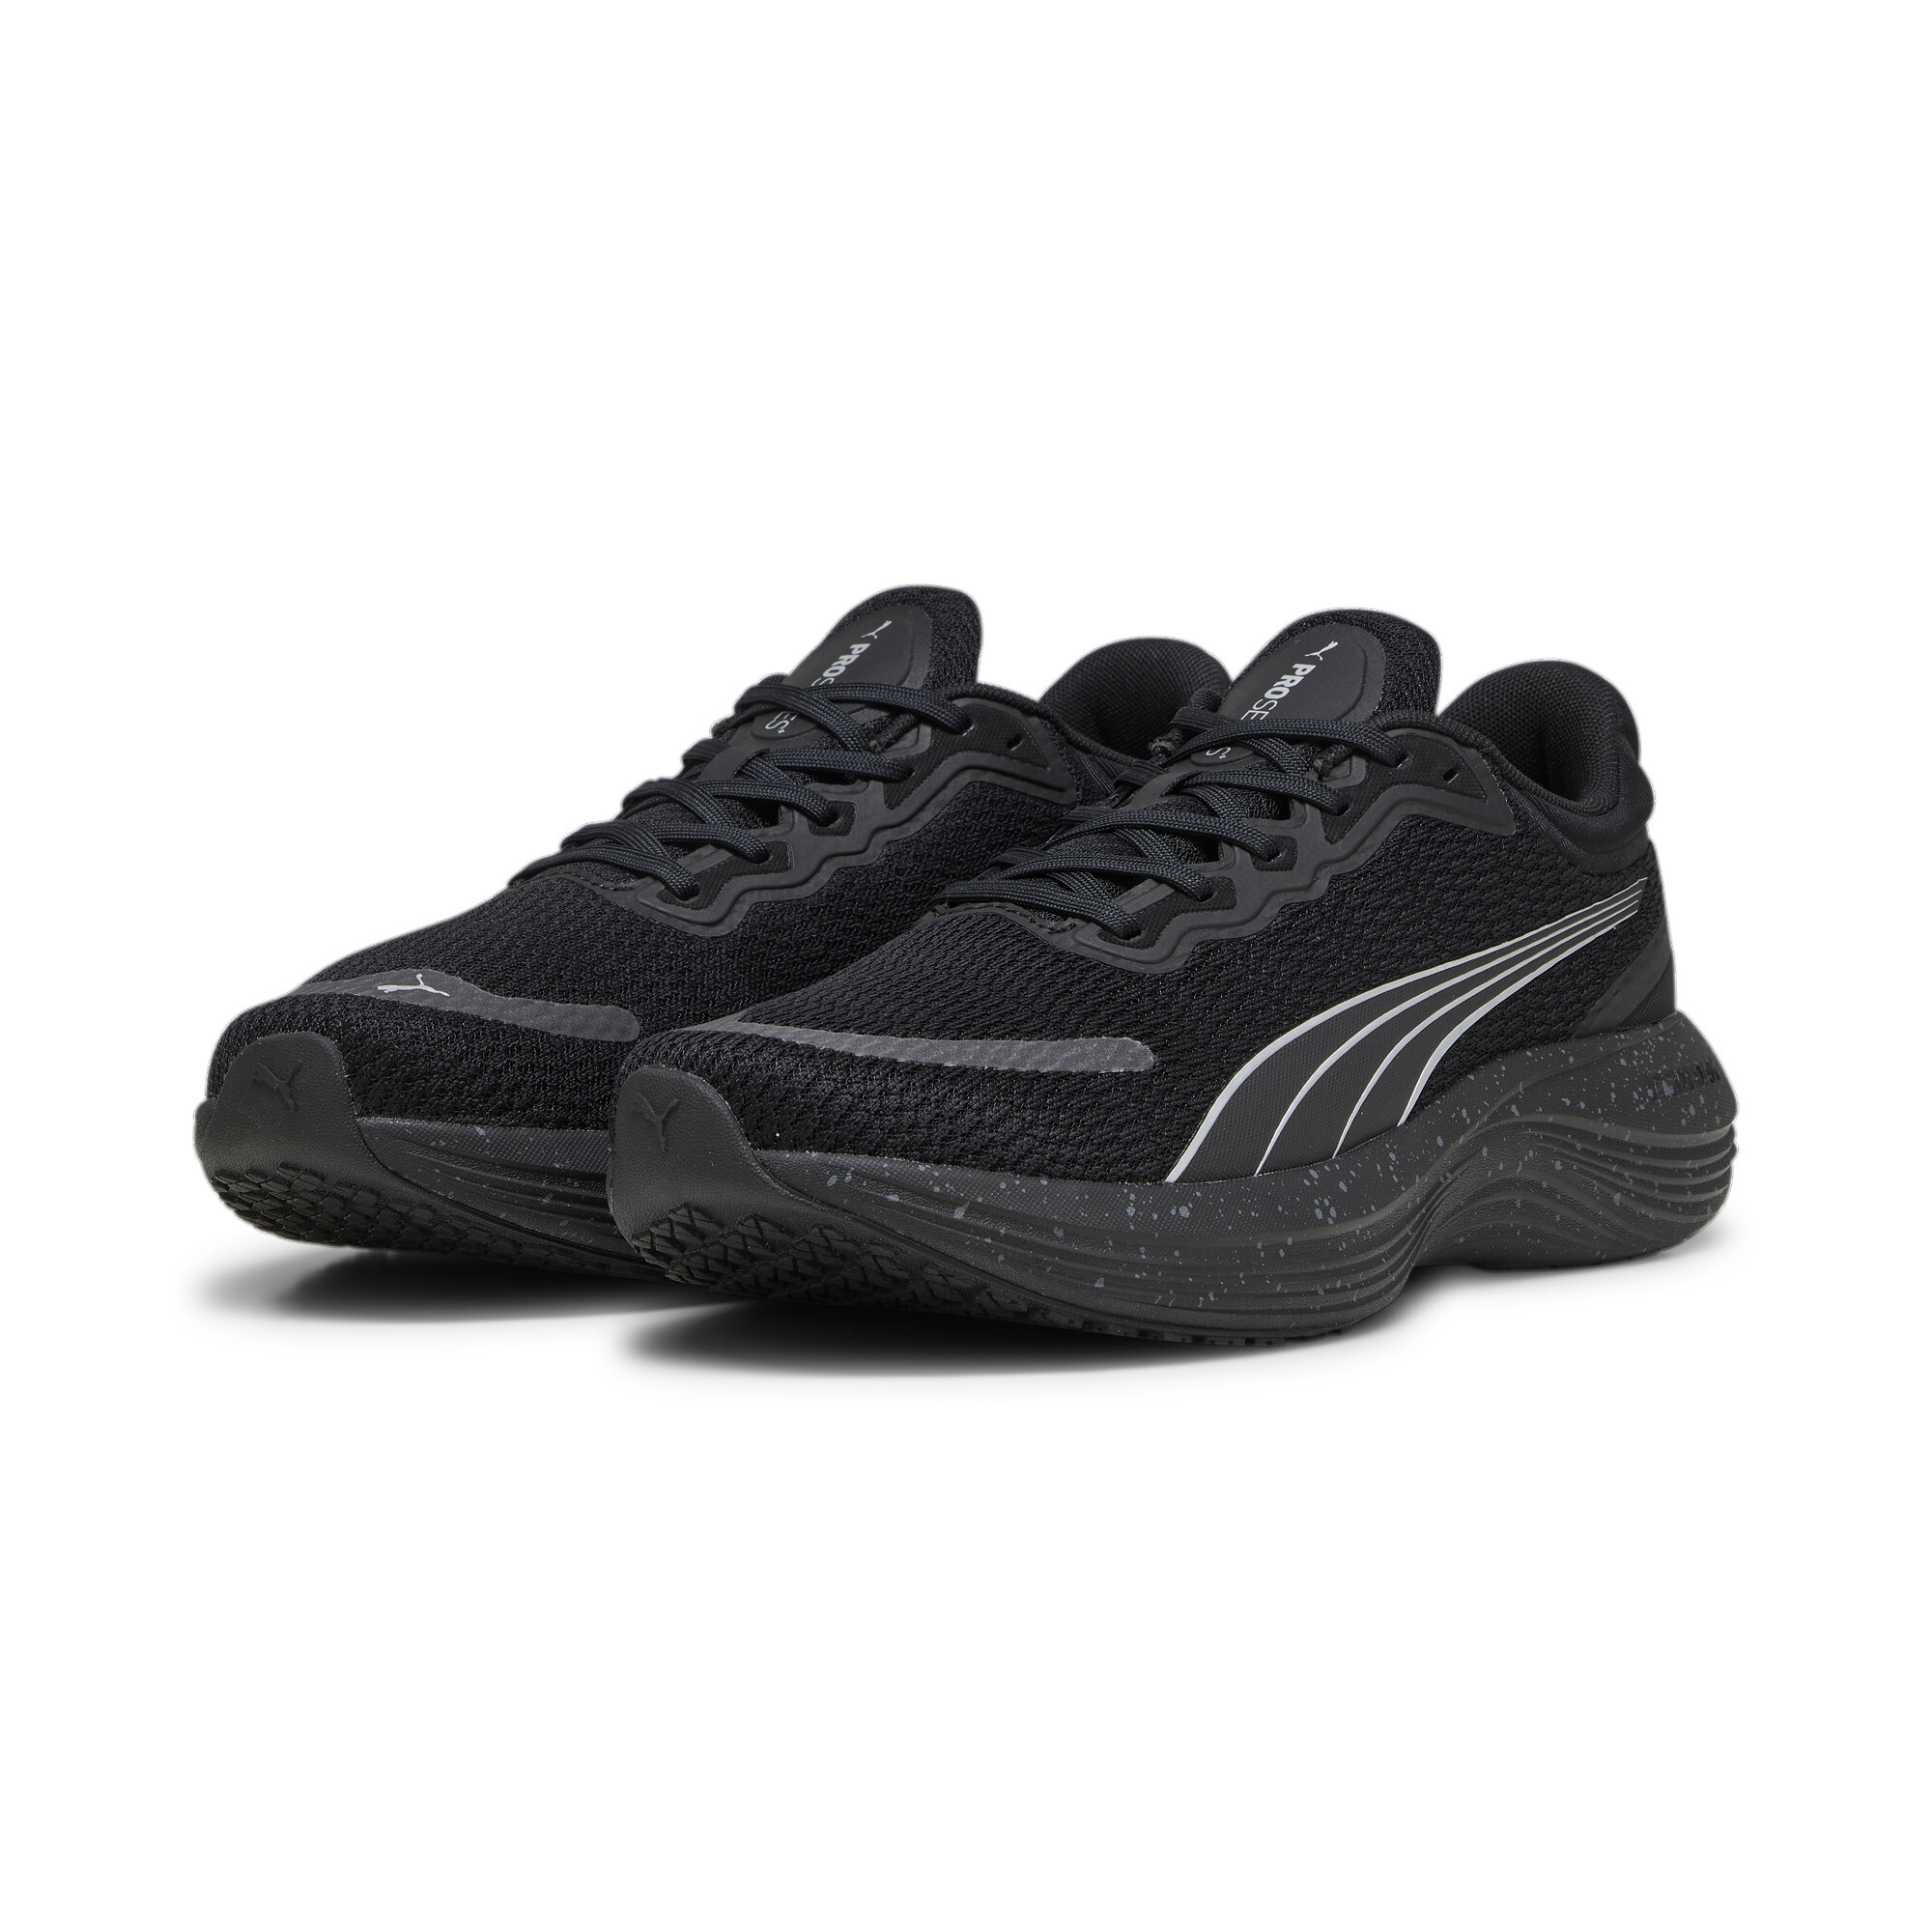 Men's PUMA Scend Pro Running Shoes In Black, Size EU 40